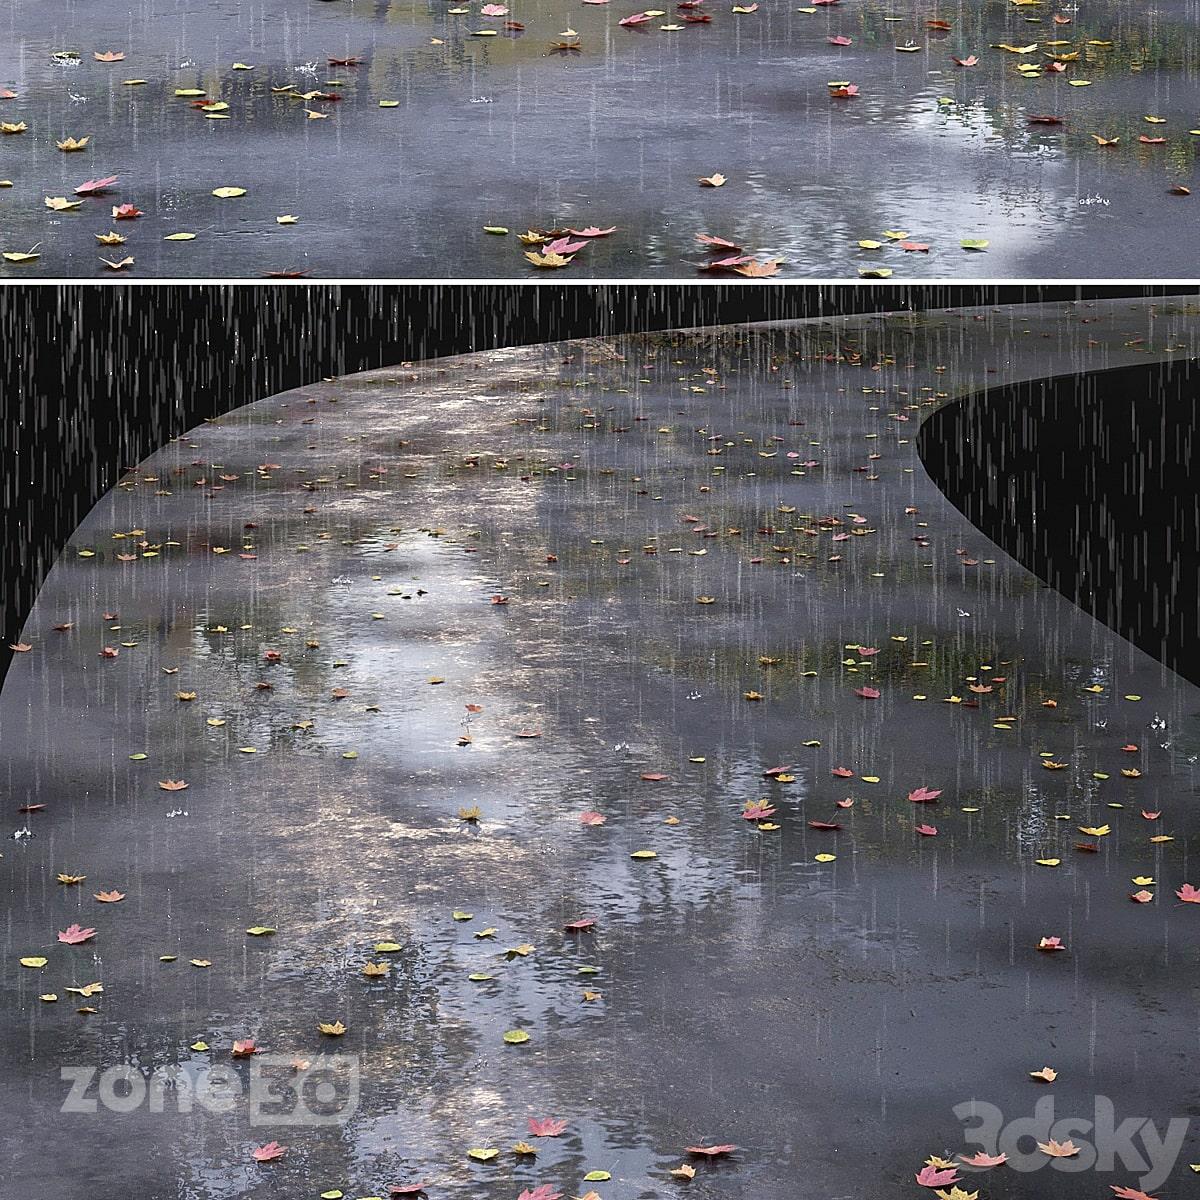 آبجکت خیابان آسفالت دو بانده با سطح خیس به همراه برگهای پاییزی